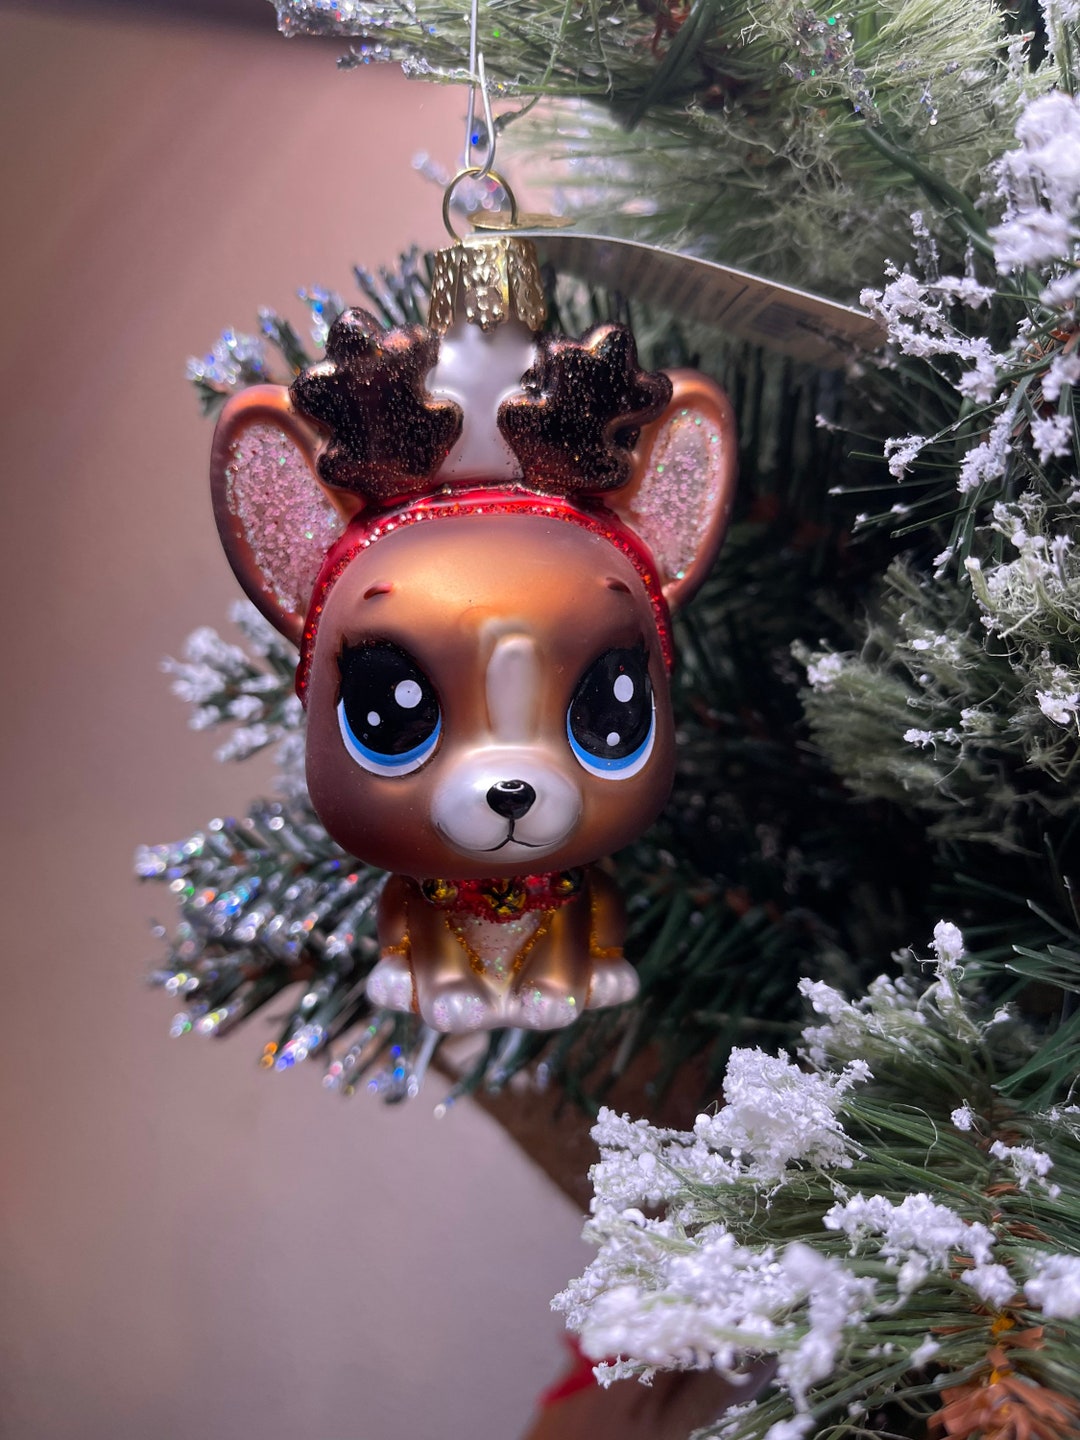 Old World Christmas Littlest Pet Shop BEV Ornament